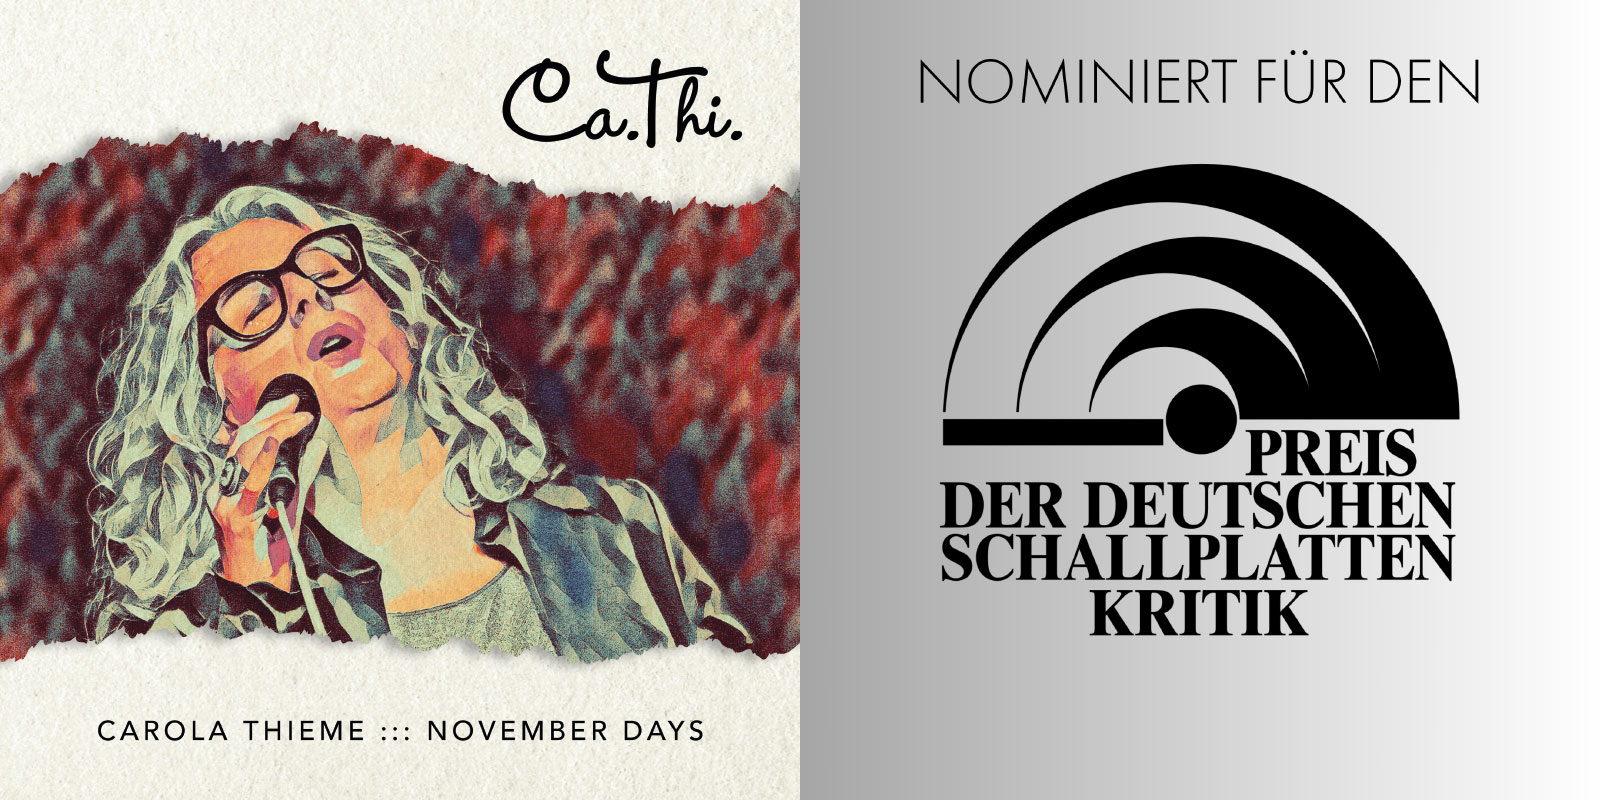 Nominiert für den Preis der deutschen Schallplattenkritik